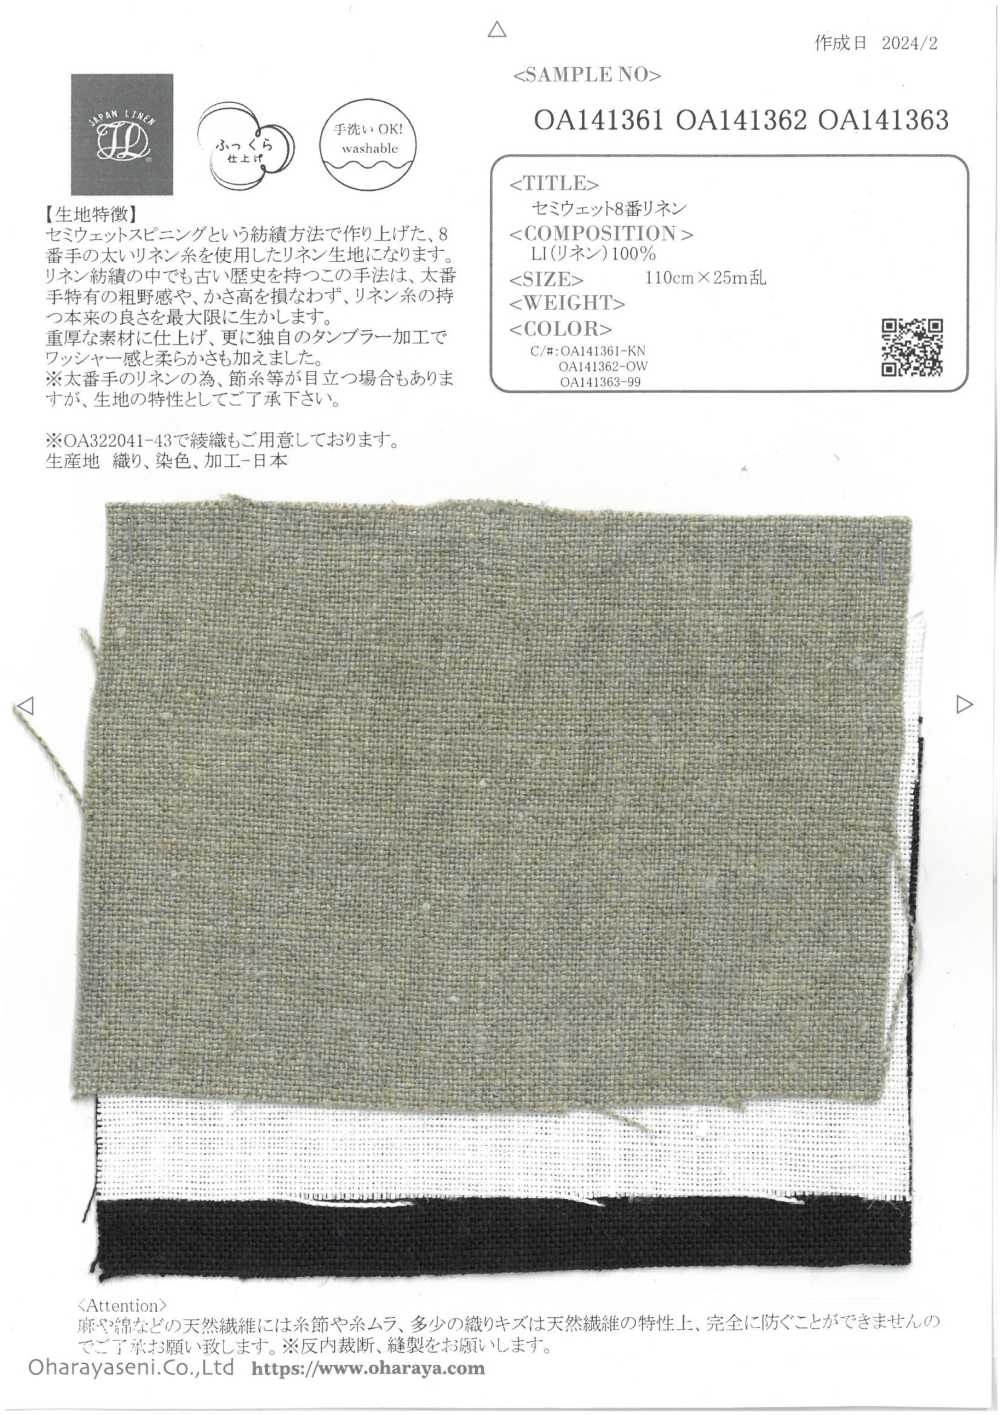 OA141363 Semi-wet No. 8 Linen[Textile / Fabric] Oharayaseni